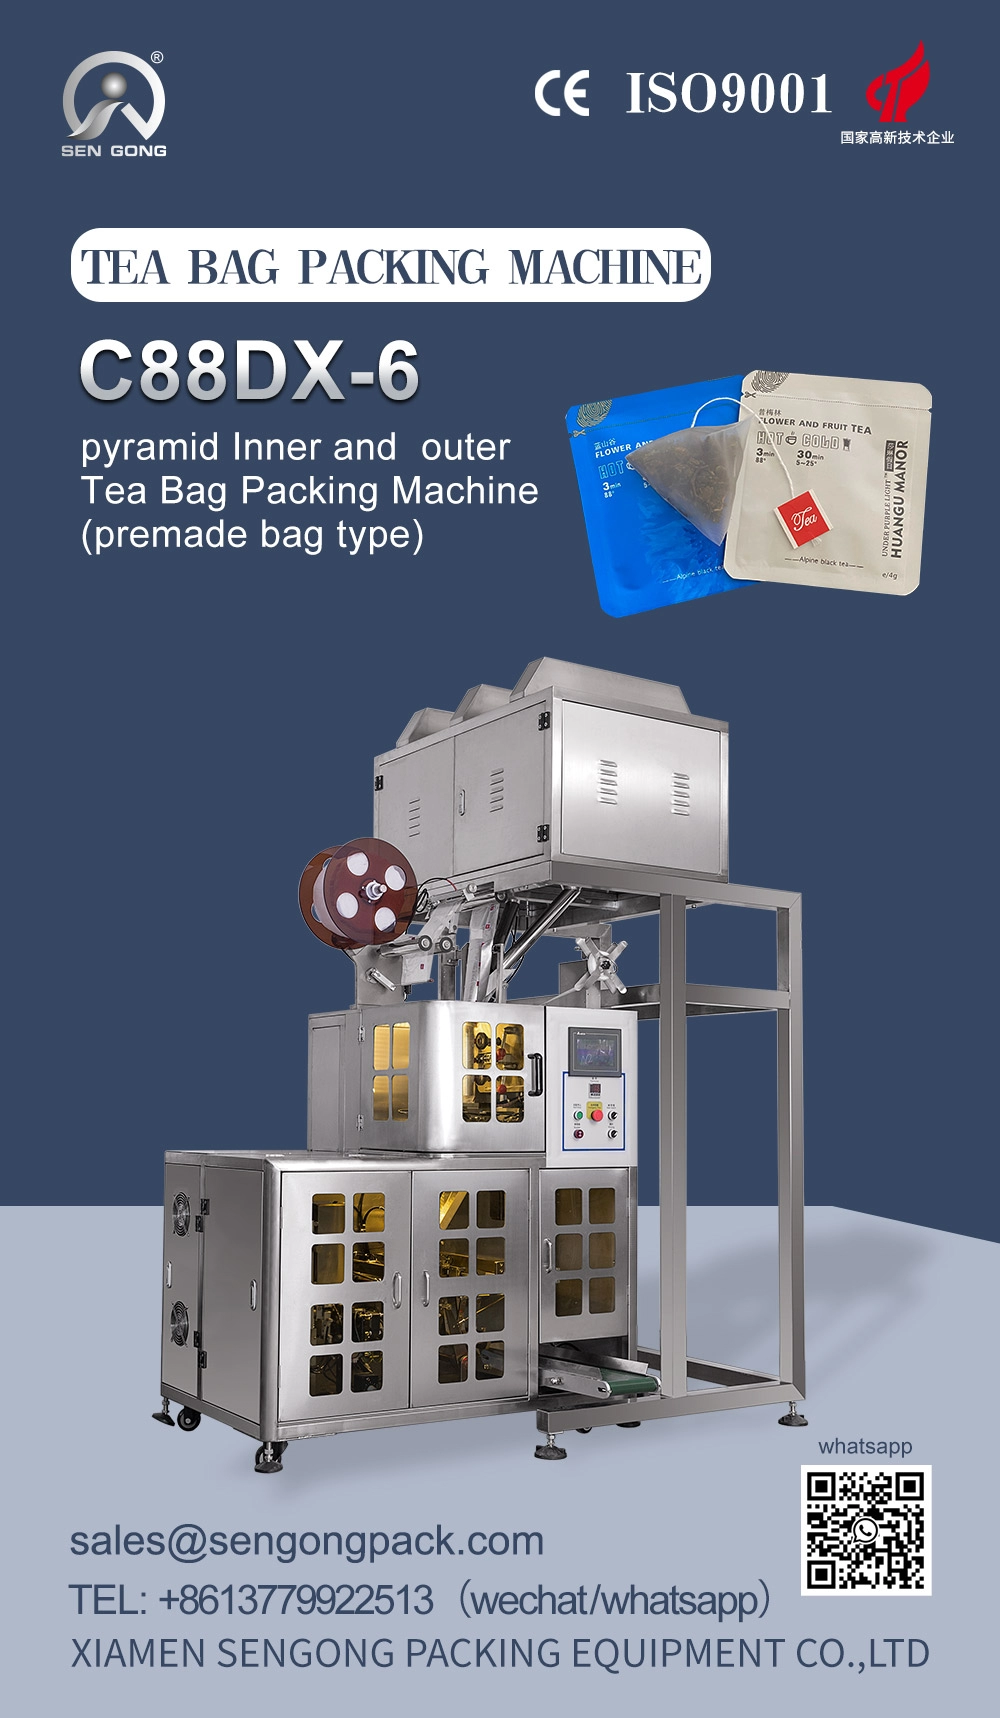 Maszyna pakująca torebki herbaty C88DX Pyramid